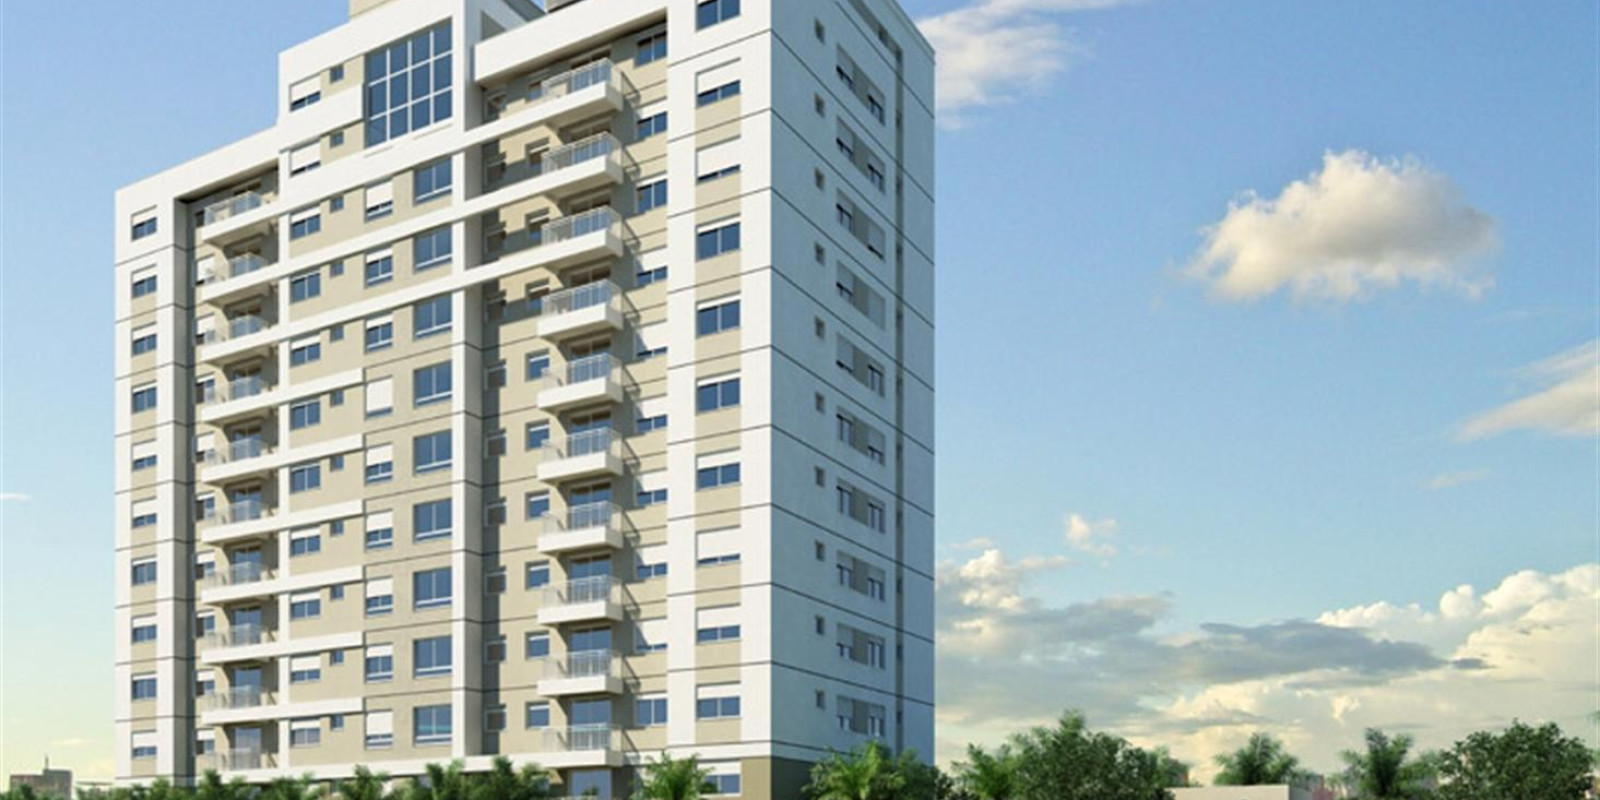 TPS Imóveis apresenta Apartamento A Venda 2 dormitórios Porto Alegre! Excelente imóvel a venda em Porto Alegre